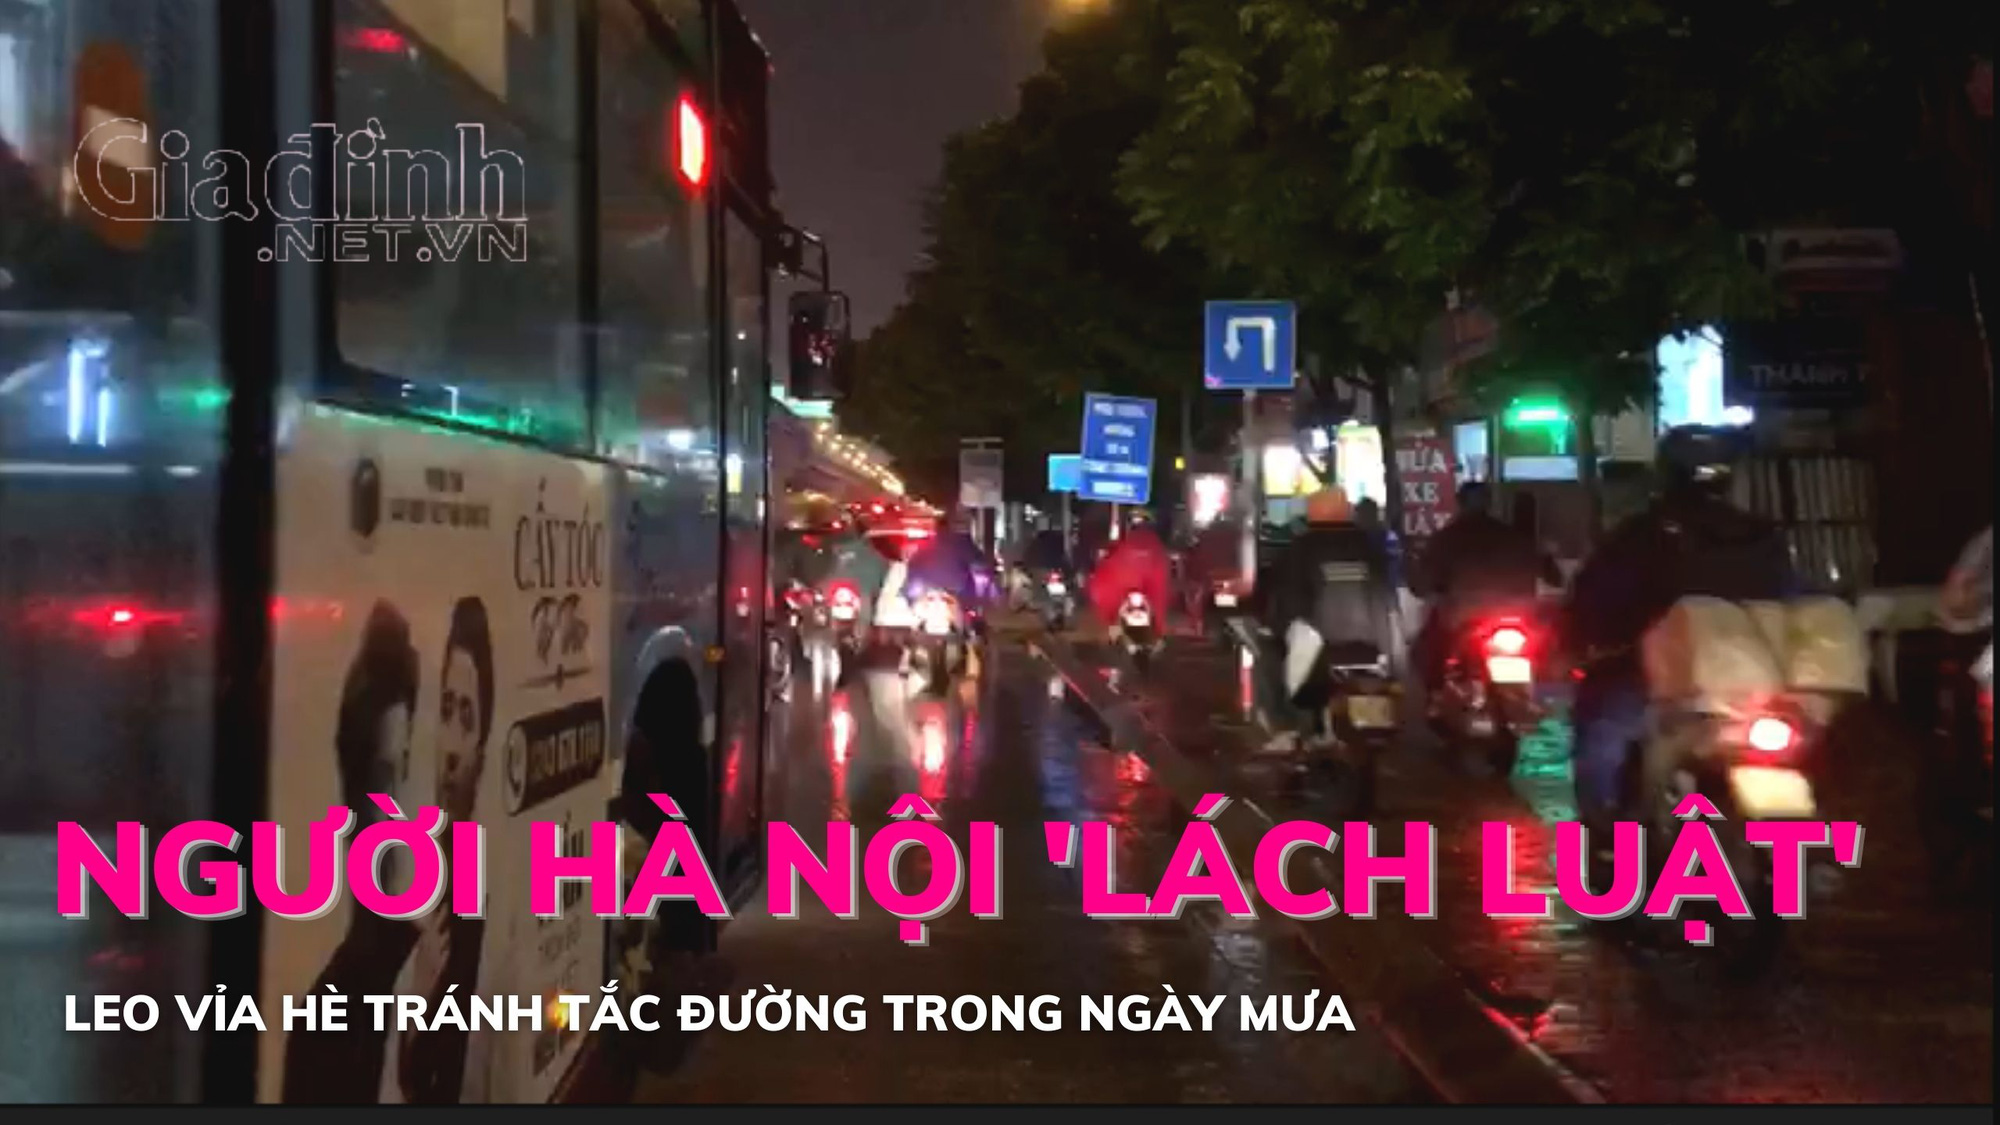 Hà Nội: Người dân 'lách luật' leo vỉa hè tránh tắc đường trong ngày mưa lạnh